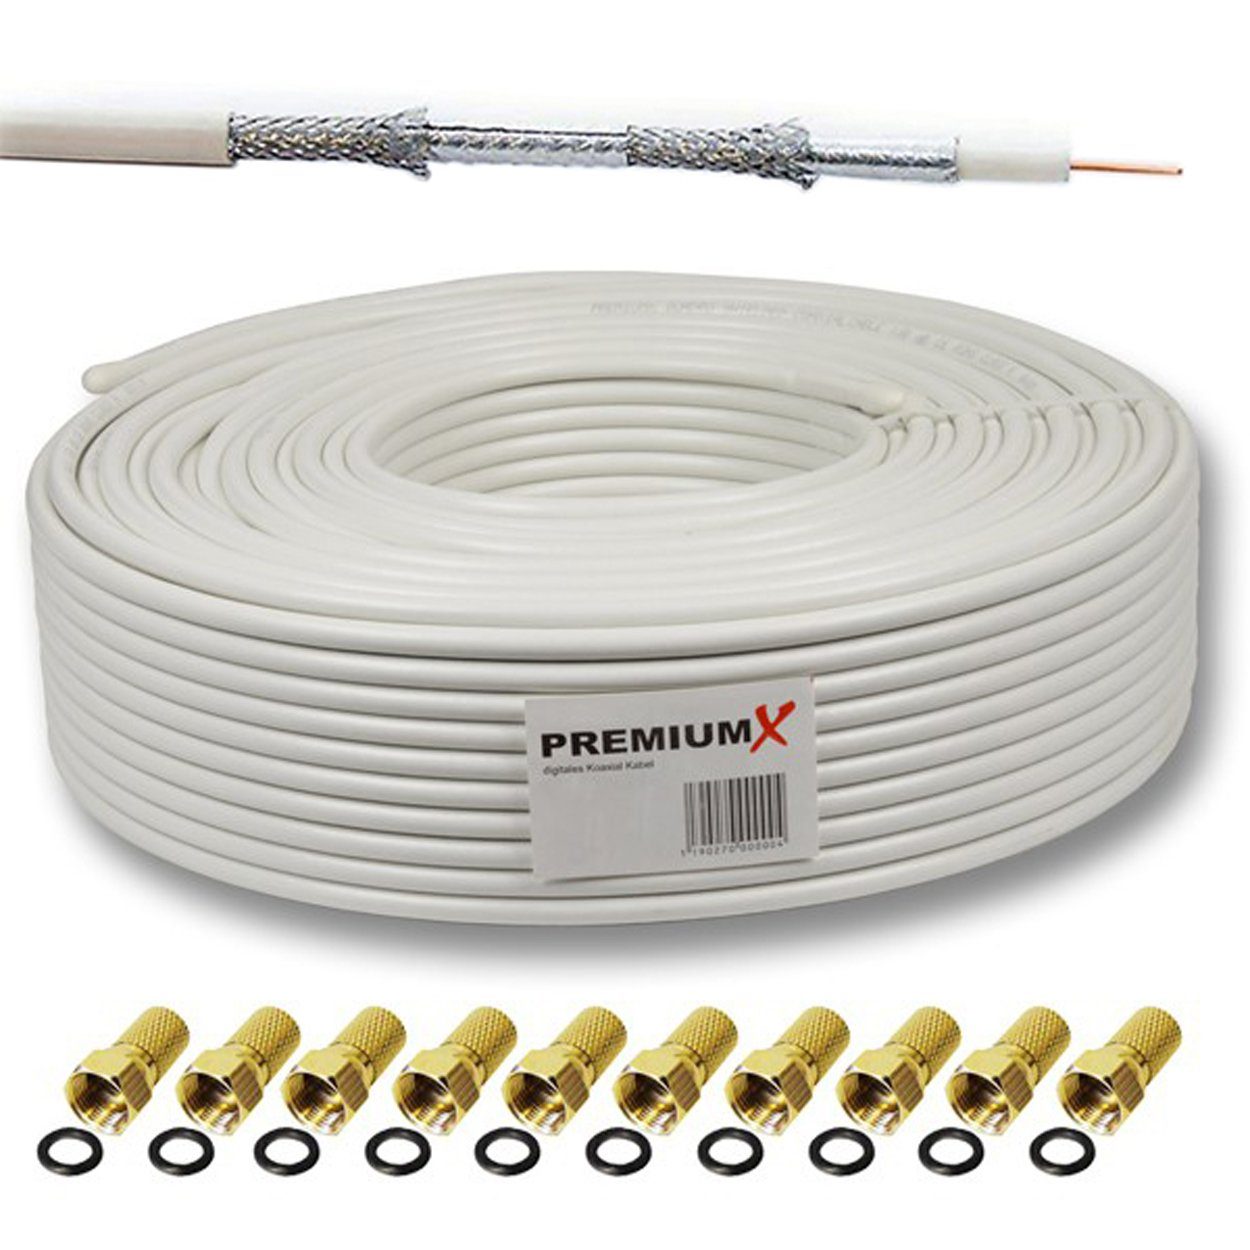 PremiumX 25m DELUXE Koaxial Kabel 135dB 4-Fach Innenleiter Kupfer SAT F-Stecker SAT-Kabel